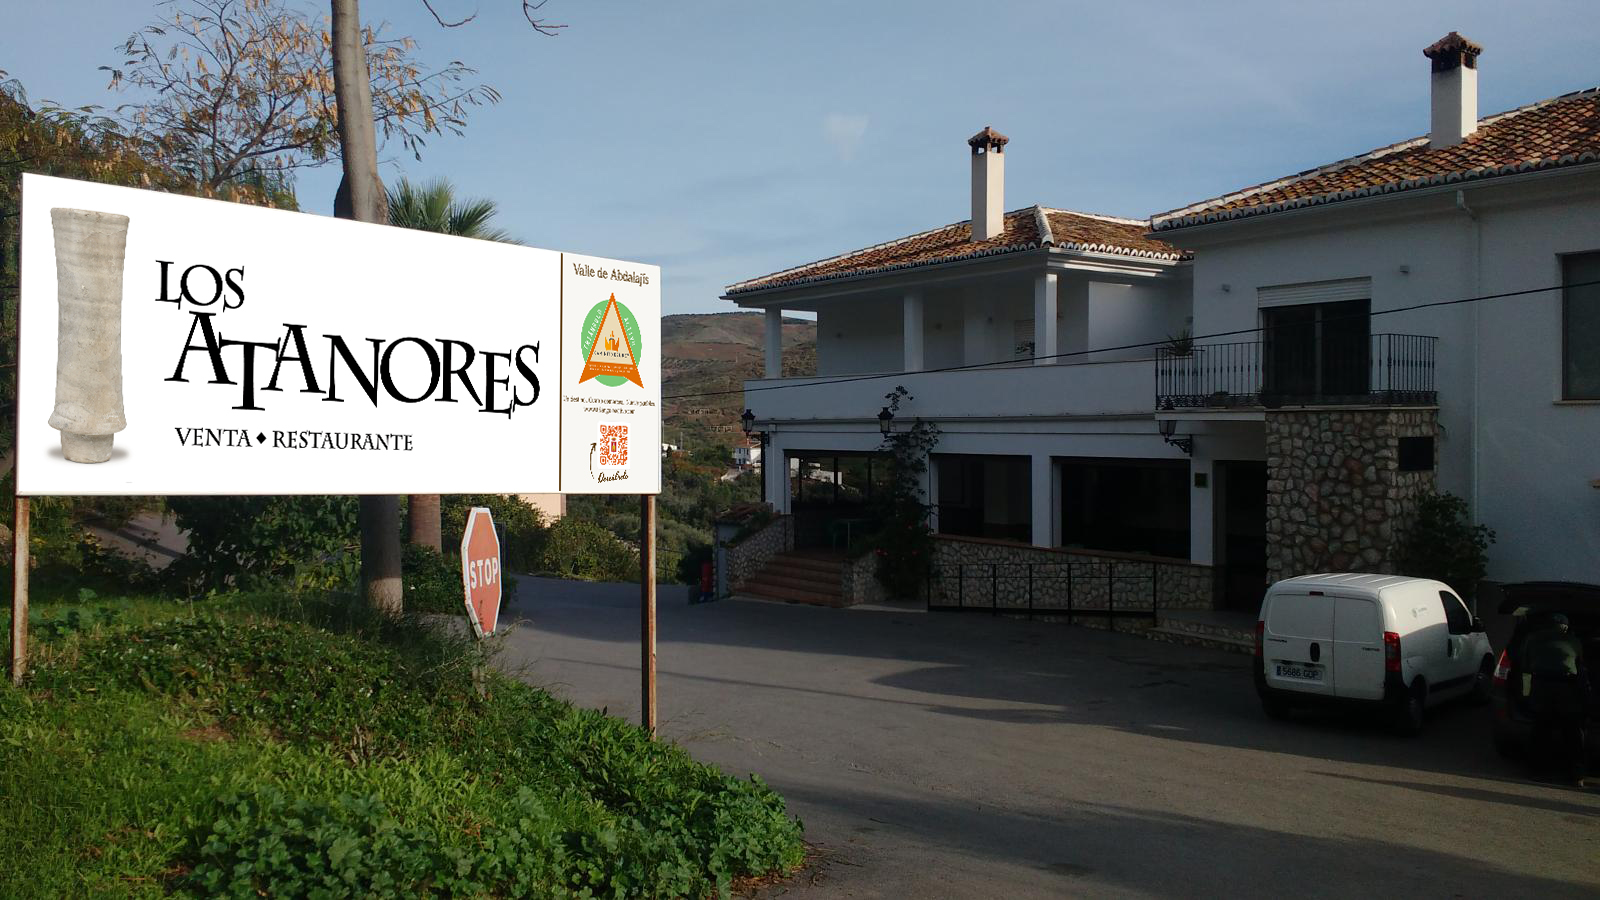 Restaurante Venta Los Atanores